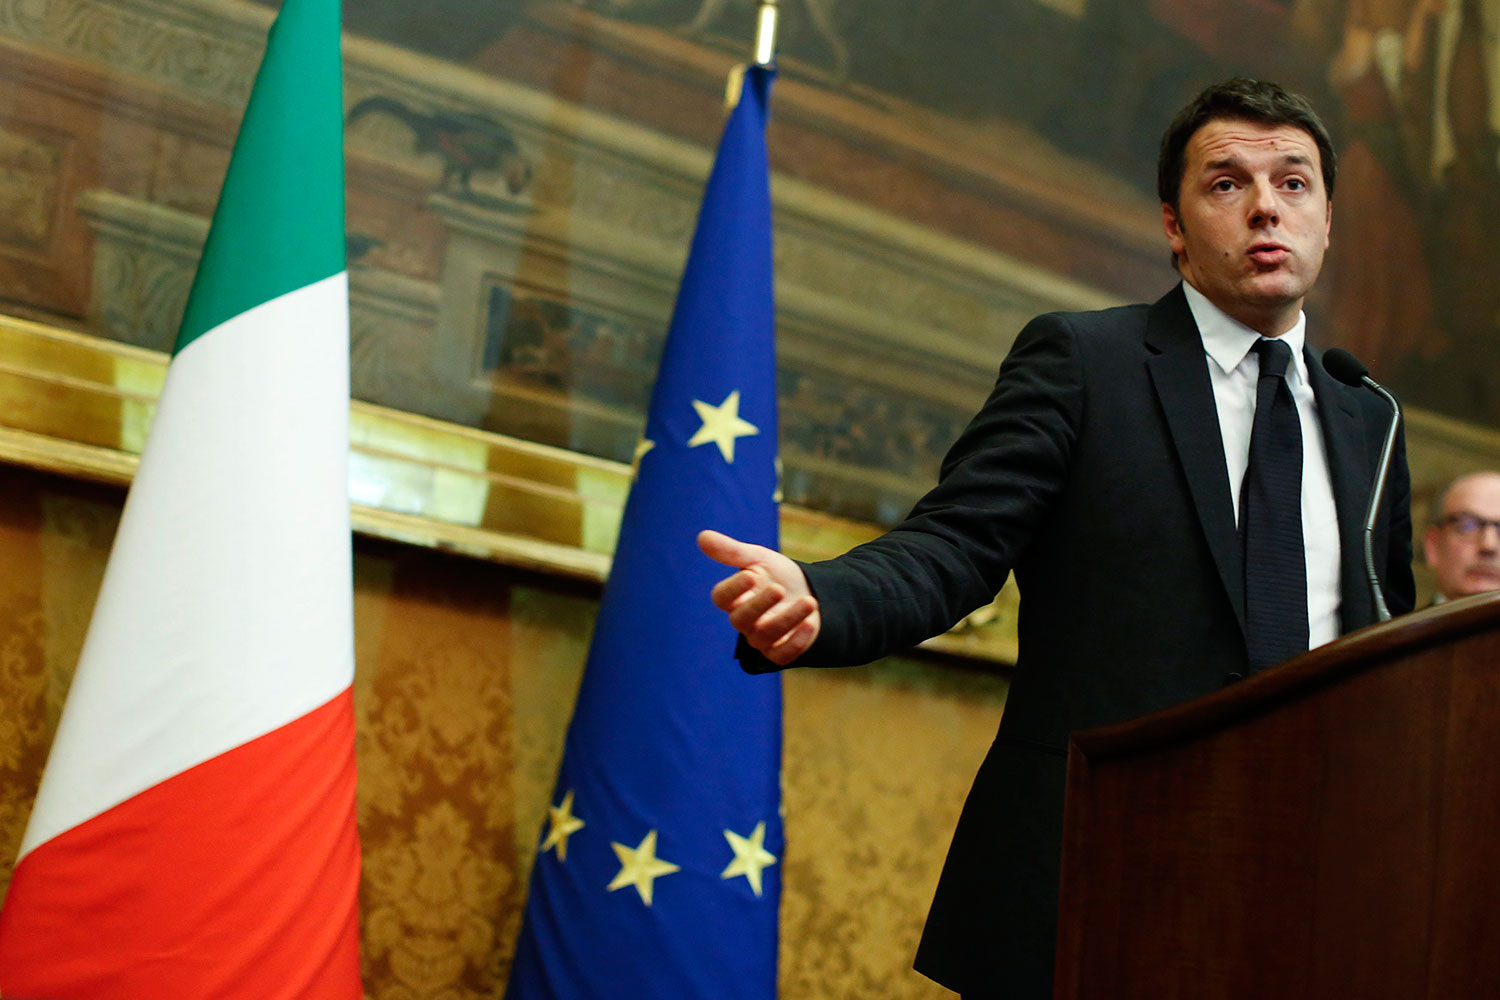 Matteo Renzi concluye las conversaciones con los grupos parlamentarios antes de jurar el cargo